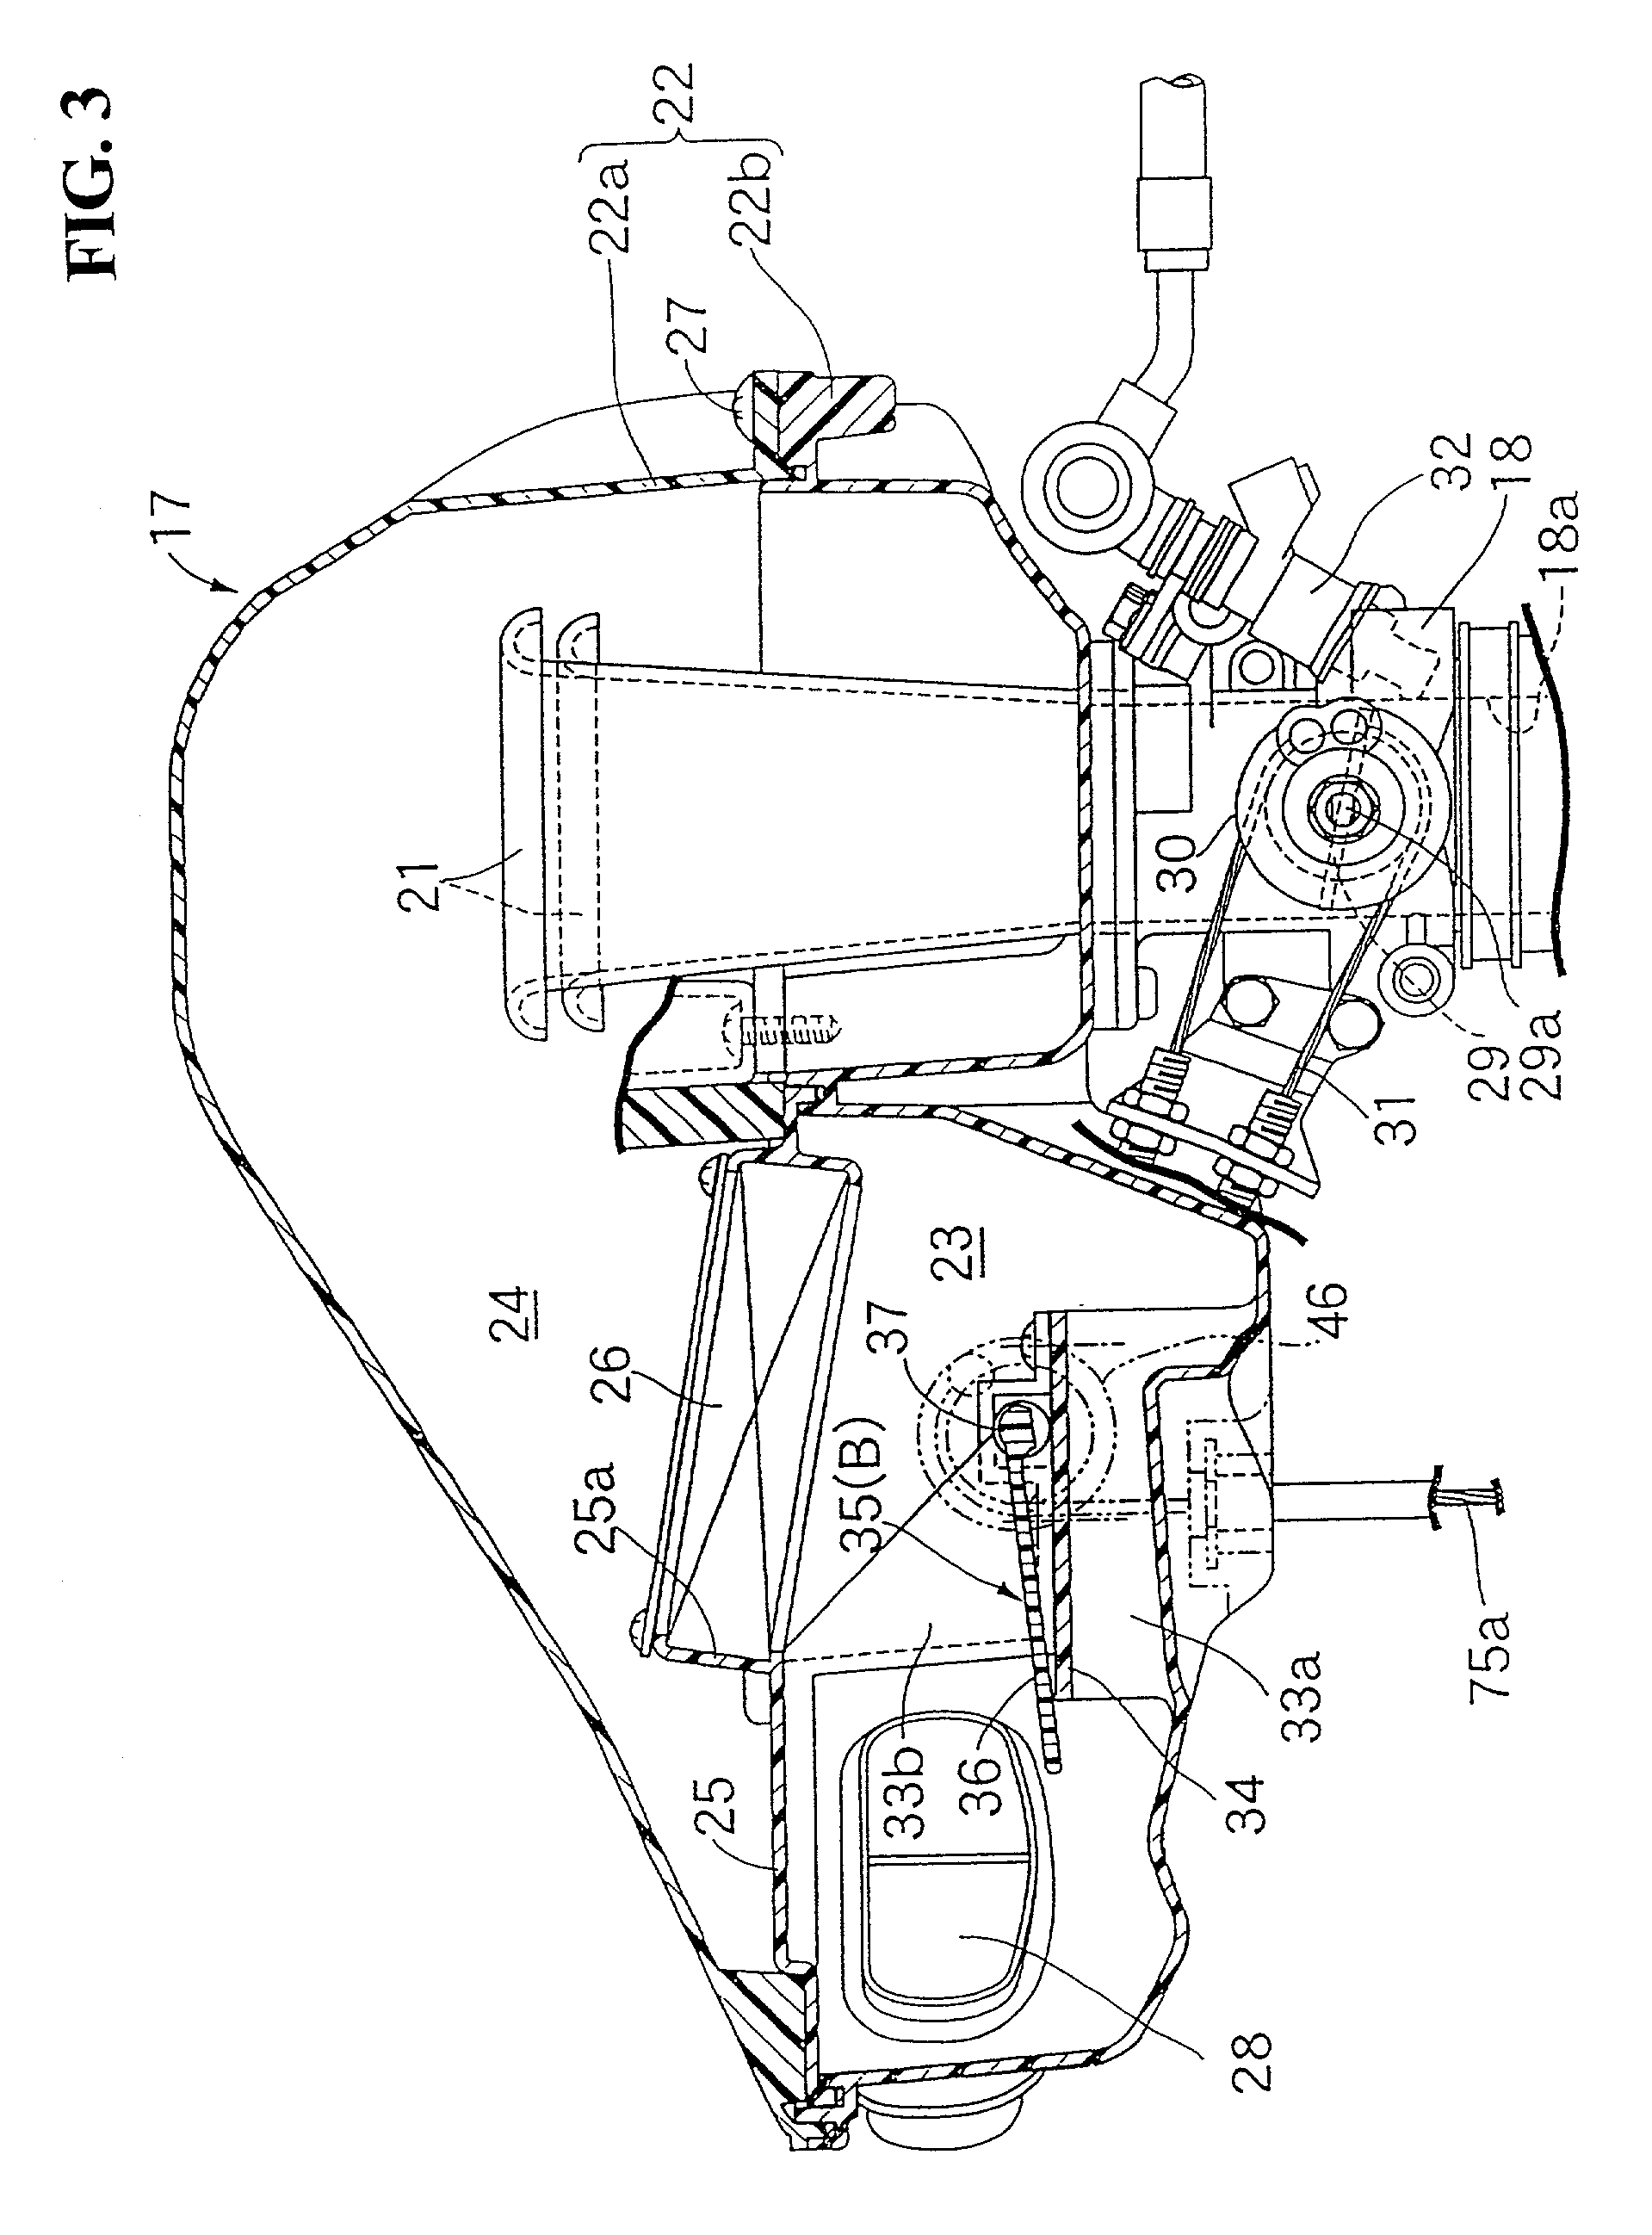 Exhaust control valve